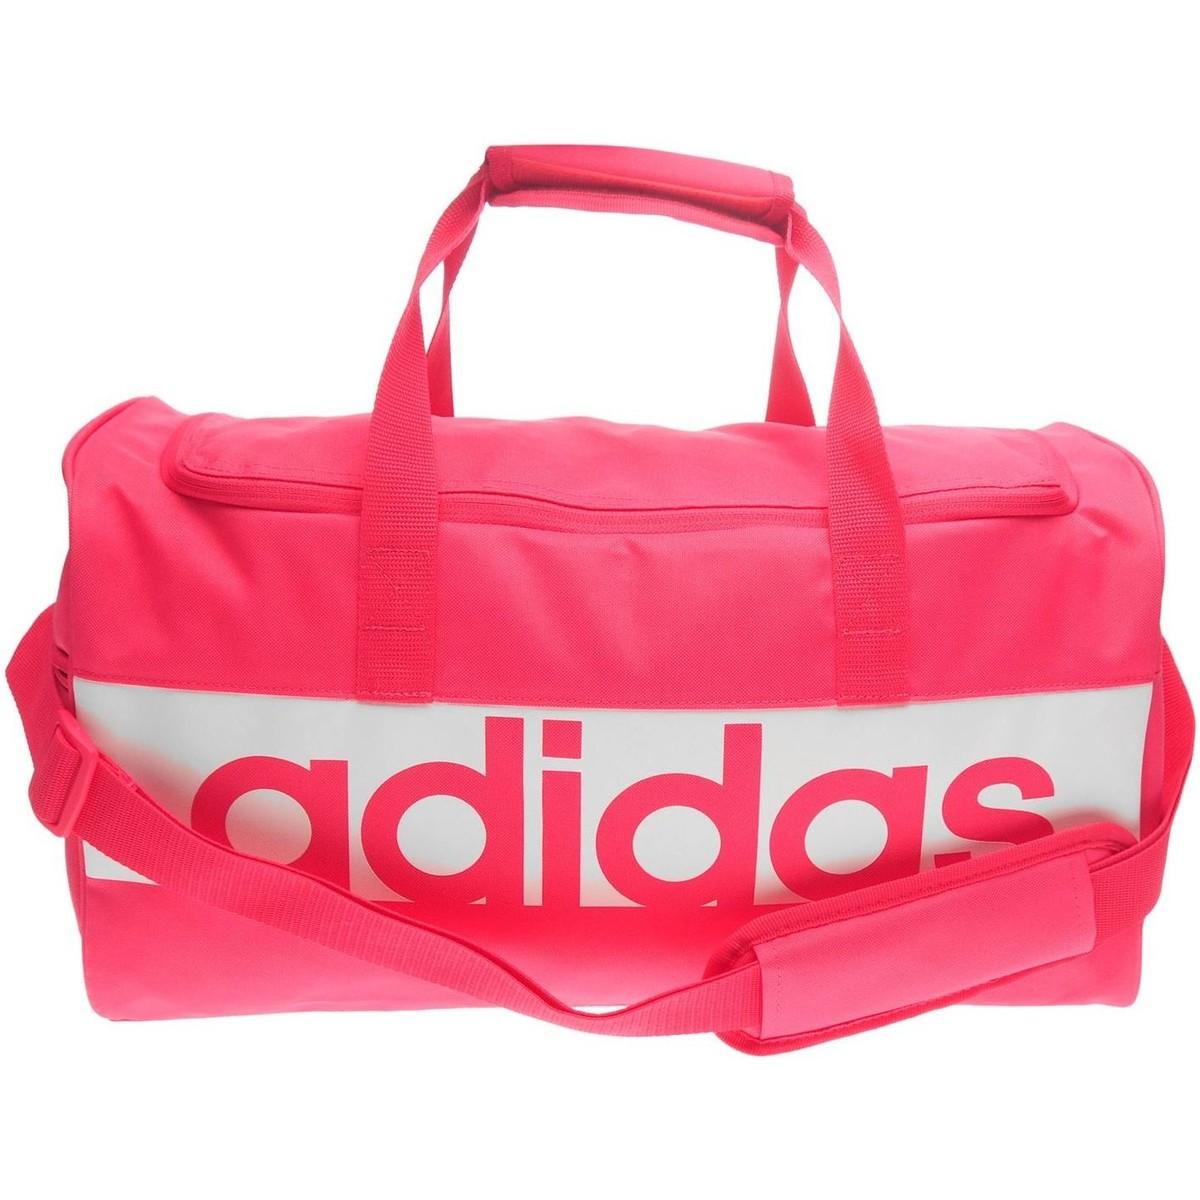 sac de sport adidas femme rose